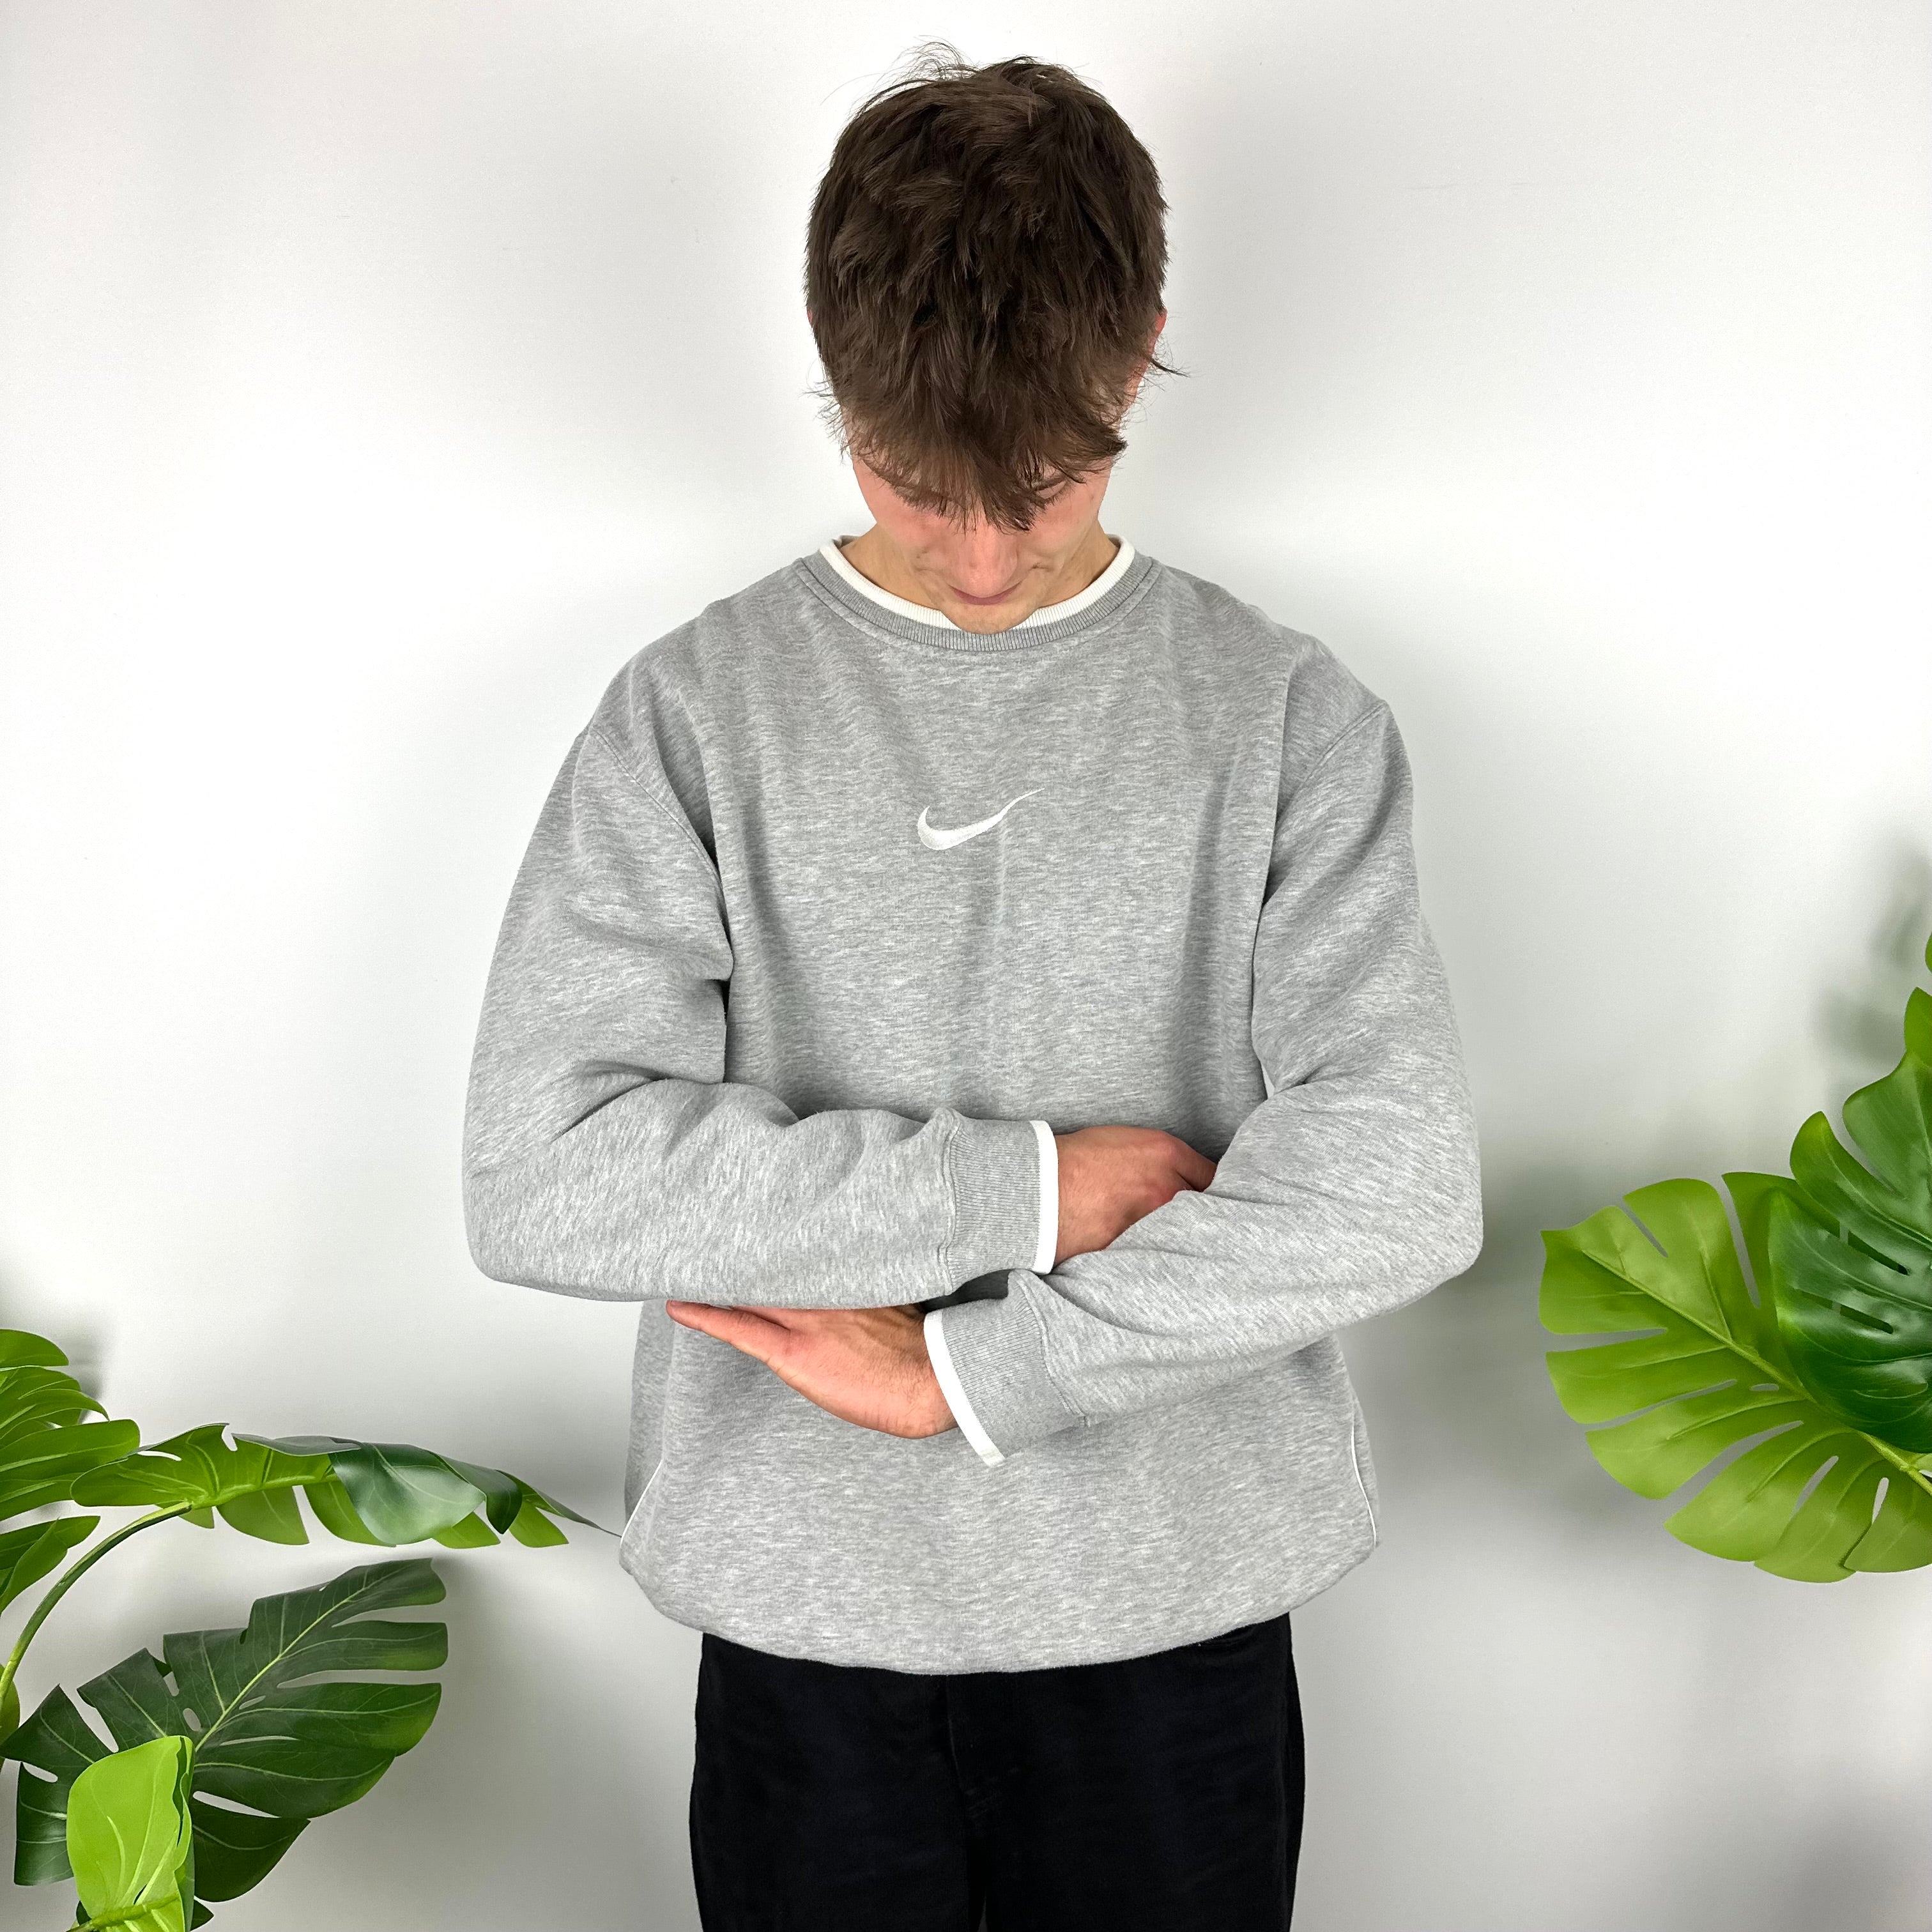 Nike Grey Embroidered Swoosh Sweatshirt (XL)